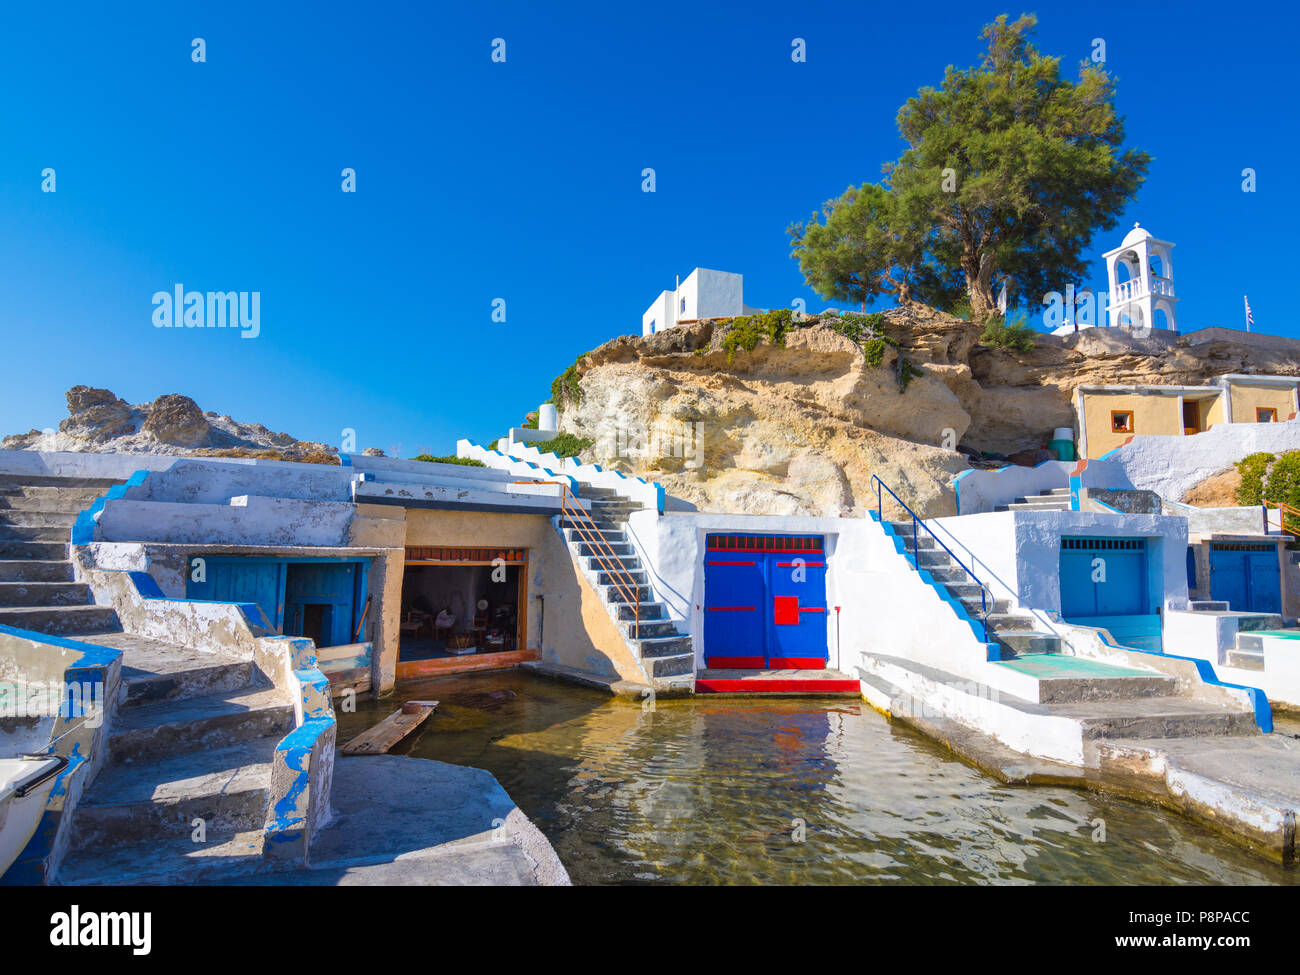 Mandrakia Dorf (traditionelle griechische Dorf am Meer, das im Stil der Kykladen) mit sirmata - der traditionellen Häuser der Fischer, Insel Milos, Griechenland. Stockfoto